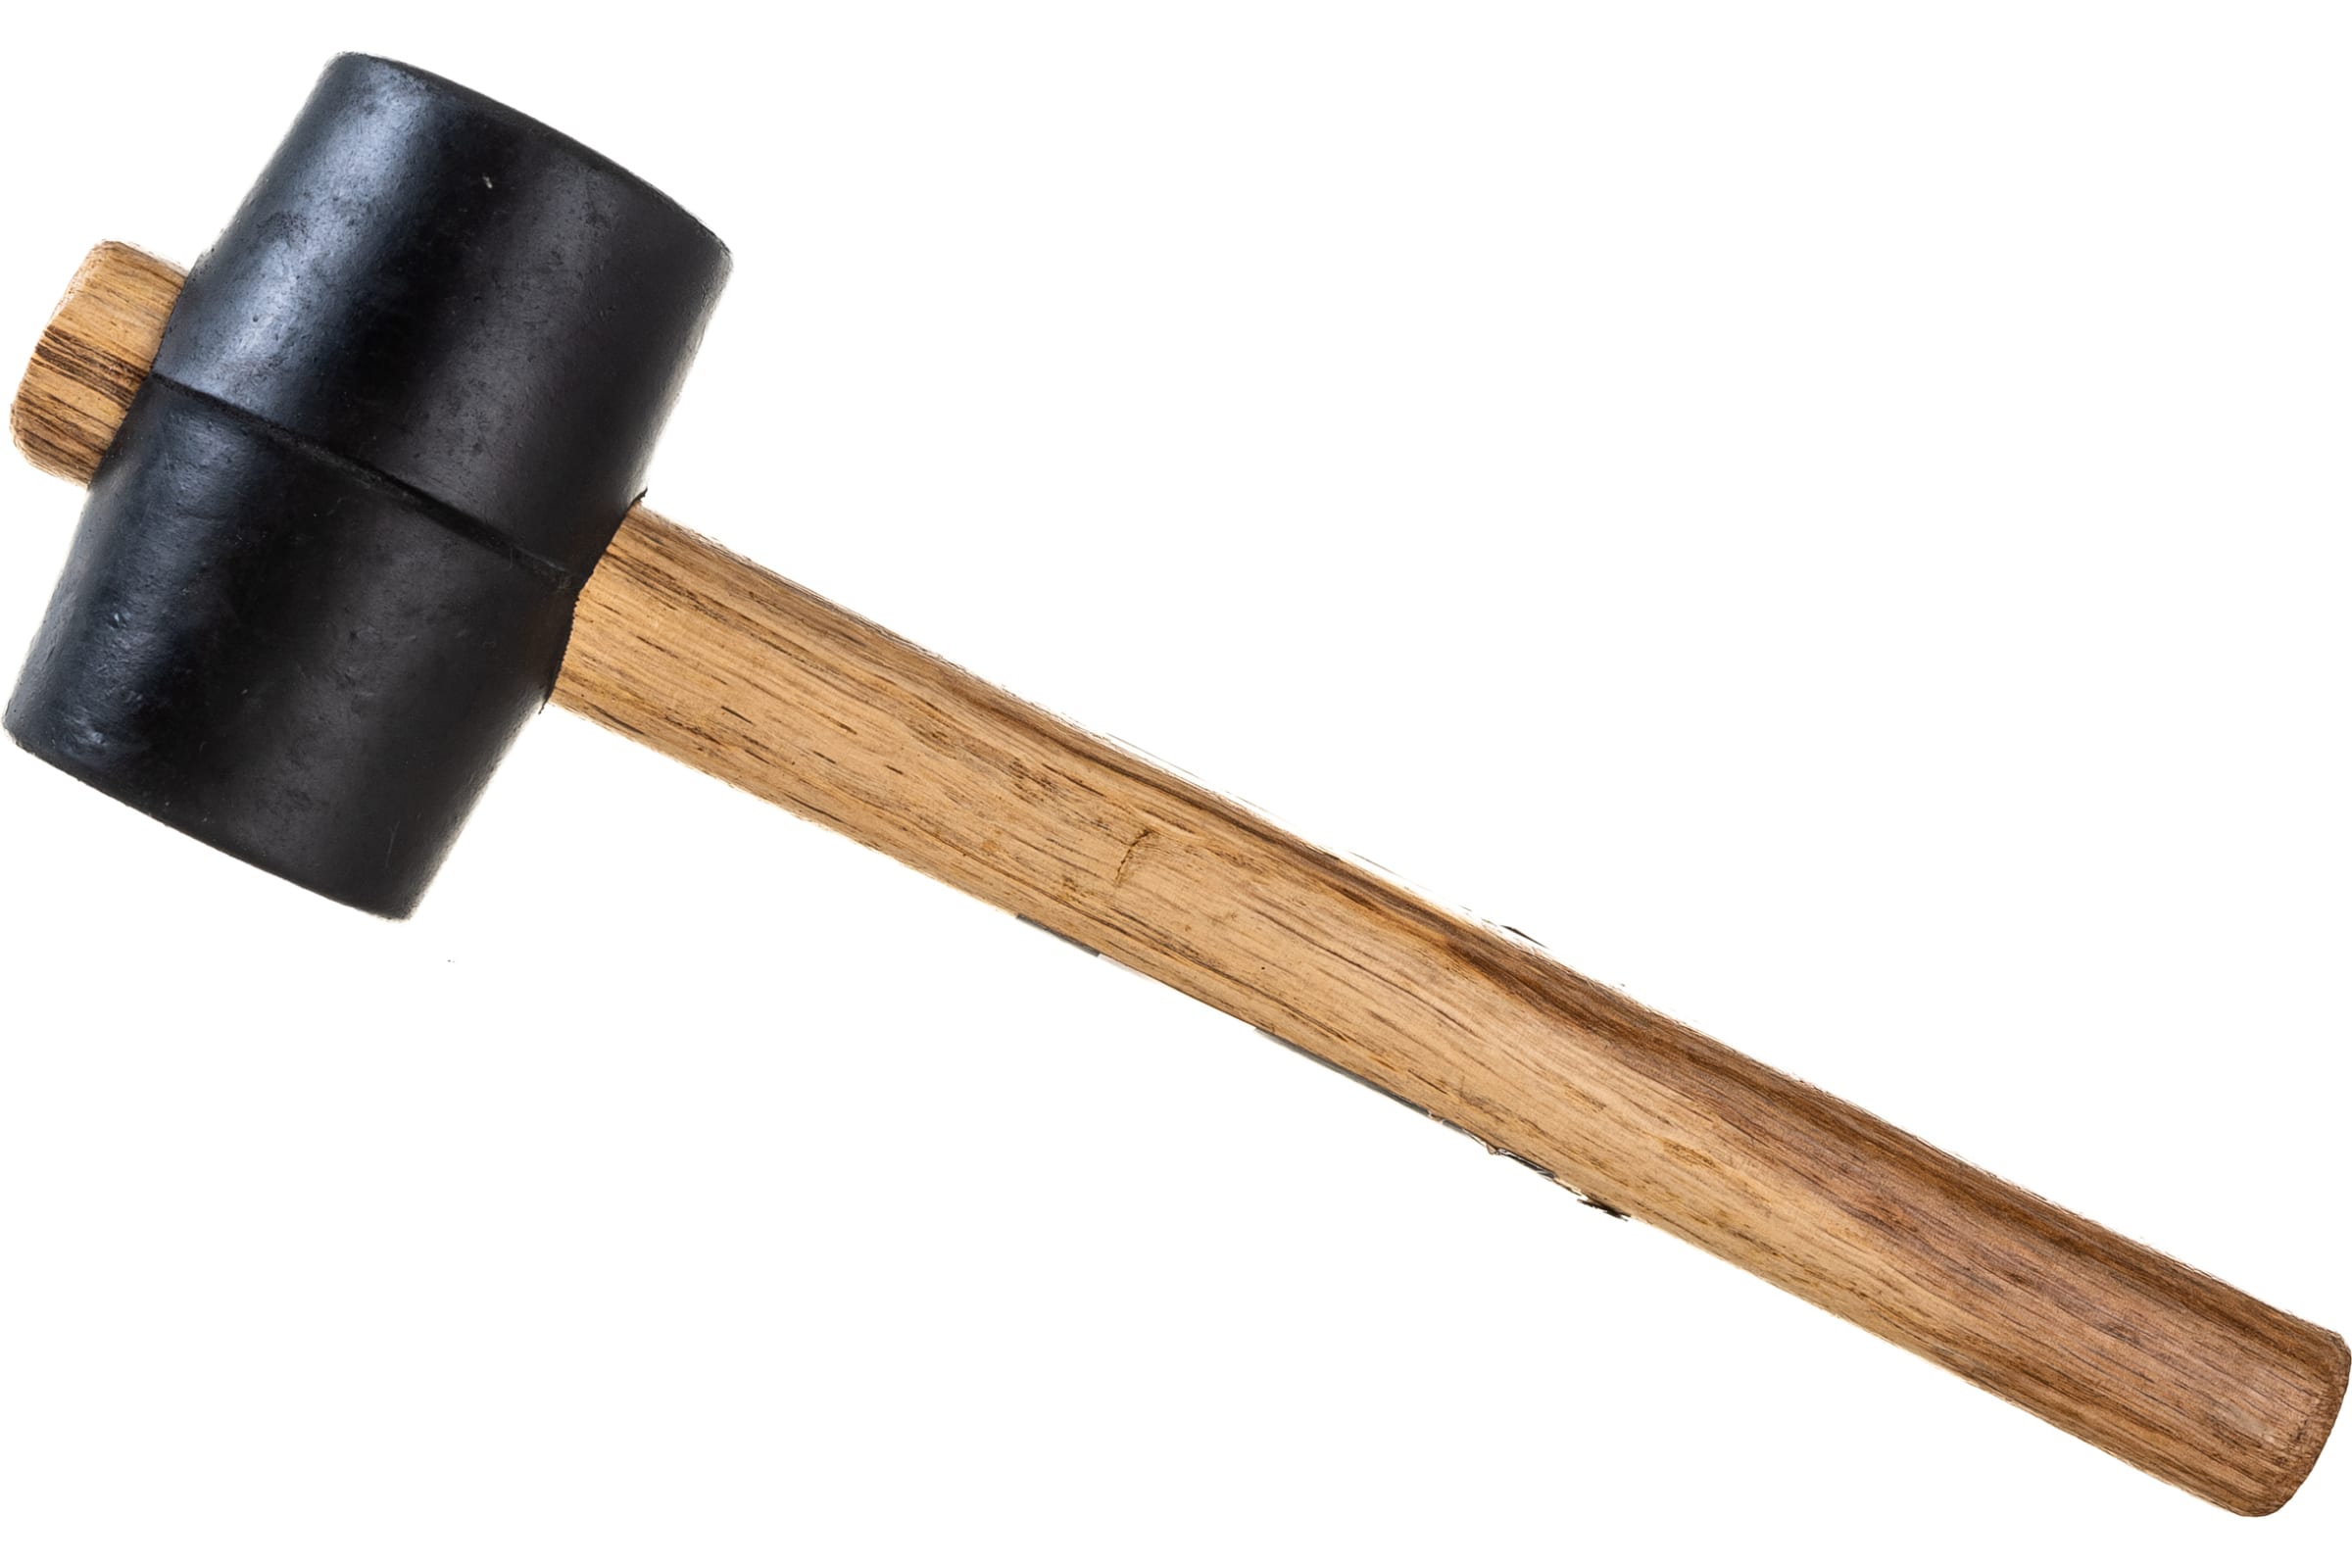 ULTIMA Киянка, деревянная рукоятка, 230 г, черная резина, 121040 киянка tundra деревянная рукоятка черная резина 1120 г